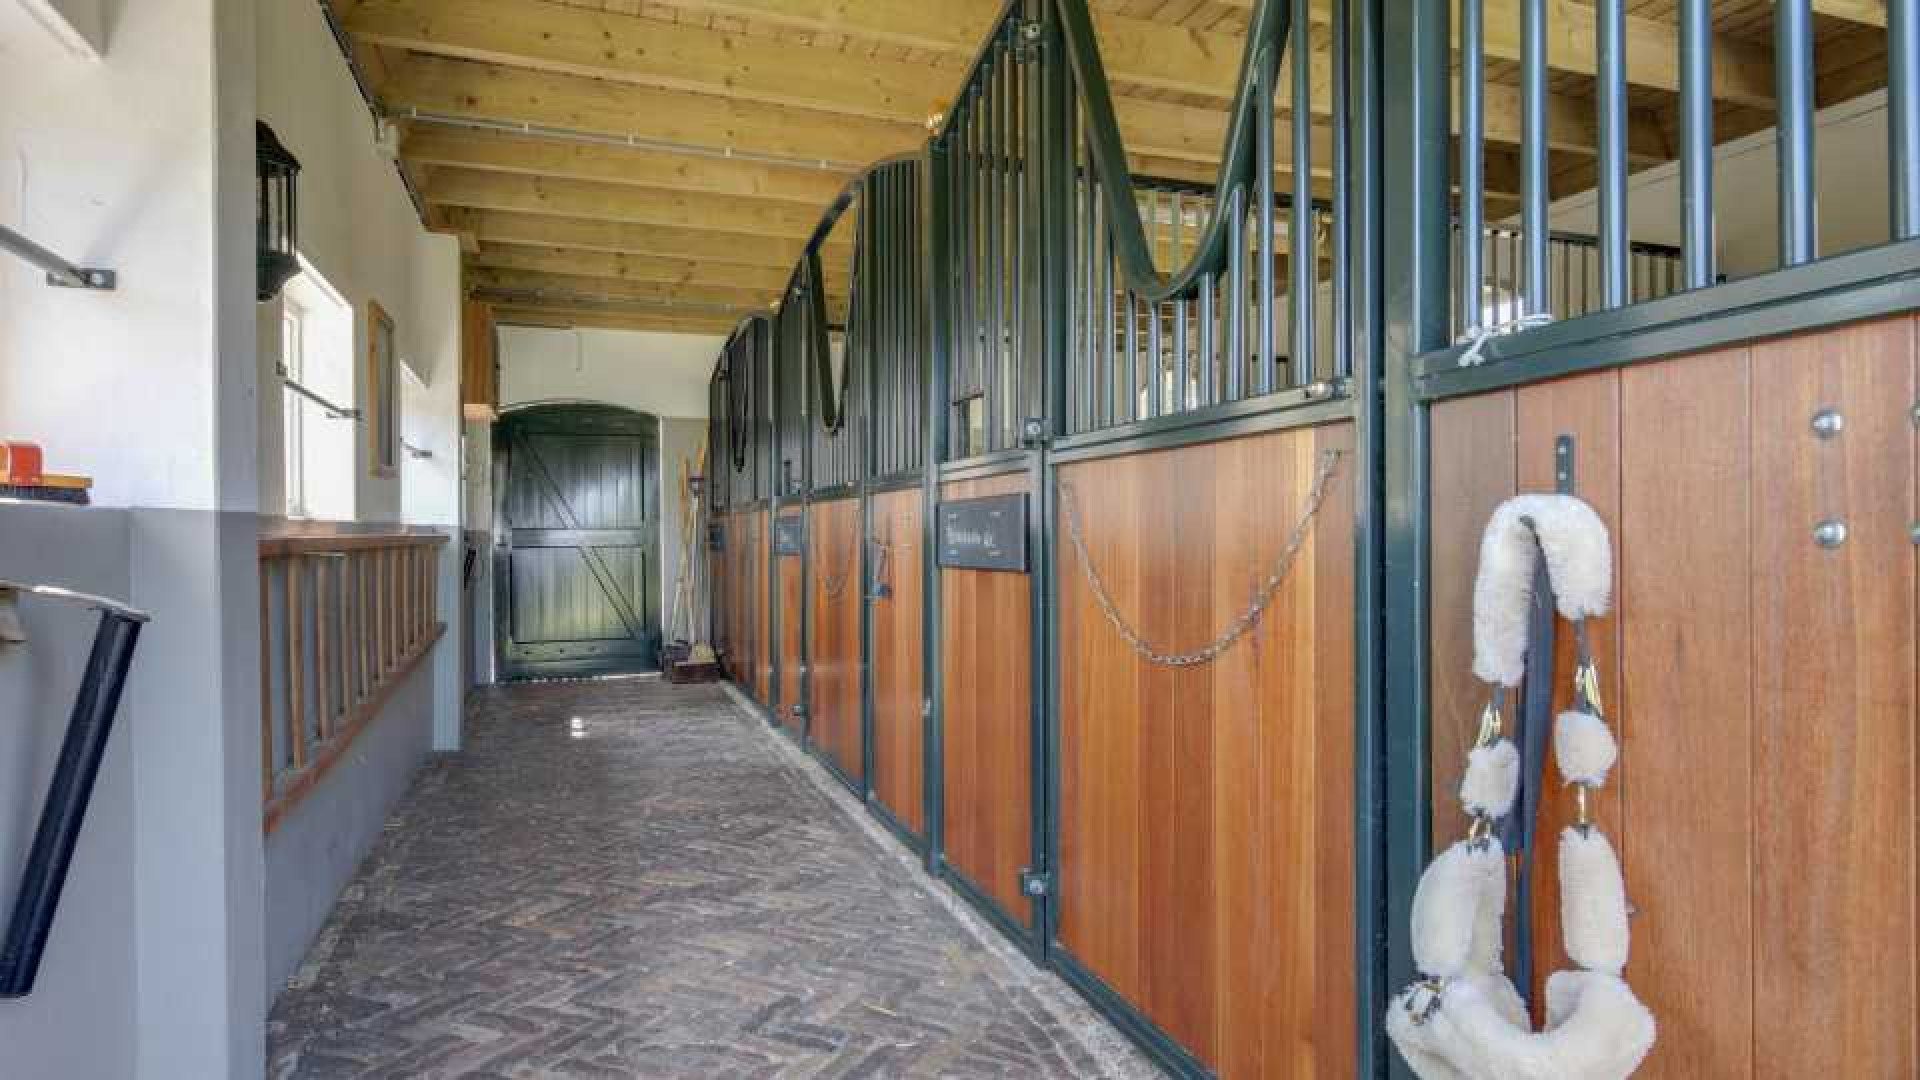 Verrassende koper woonboerderij Meilandjes in Hengelo. Zie foto's